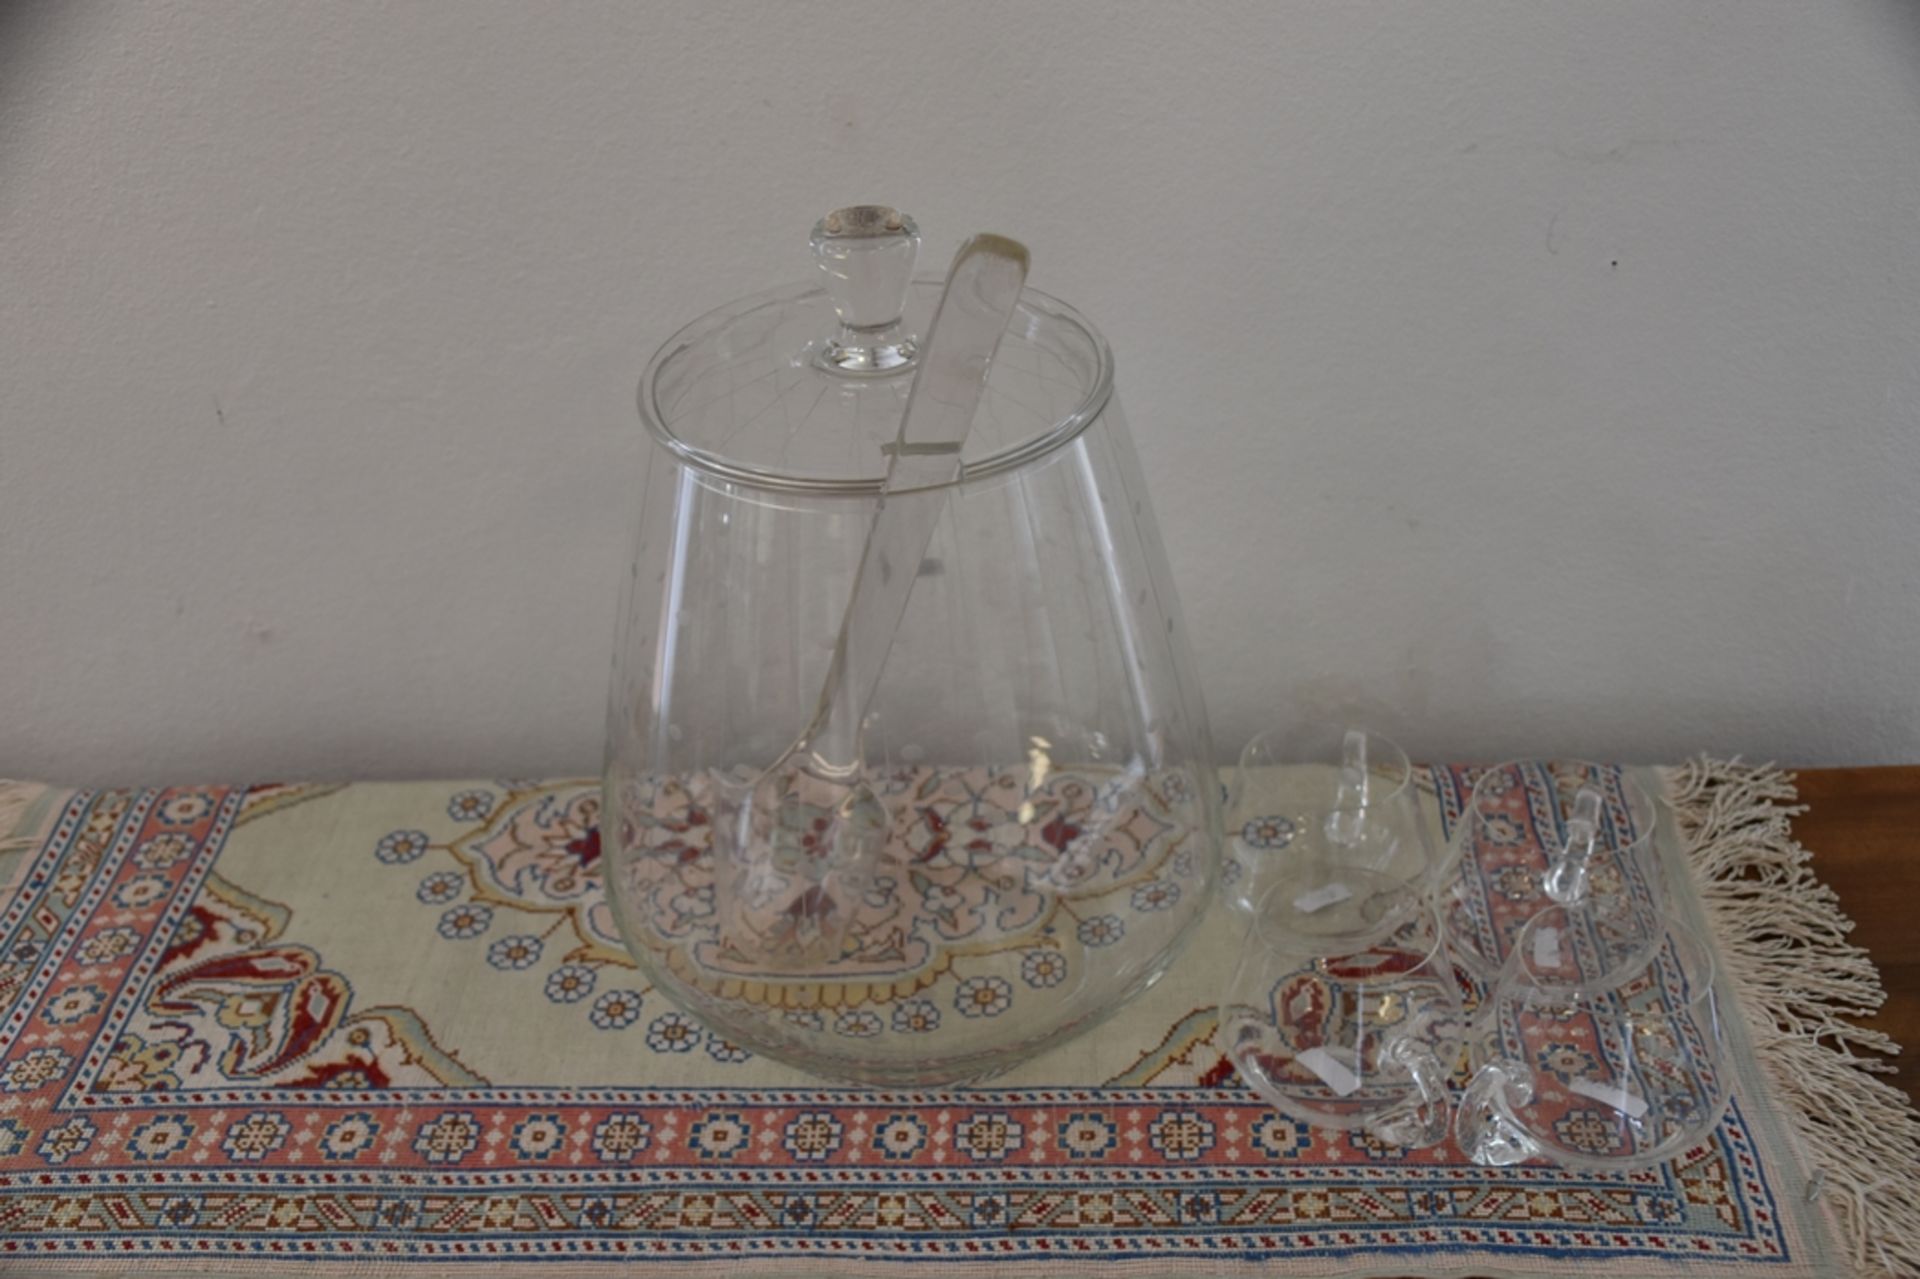 Bowlengefäß mit vier Gläsern, mundgeblasen, mit Kelle. - Bild 3 aus 3